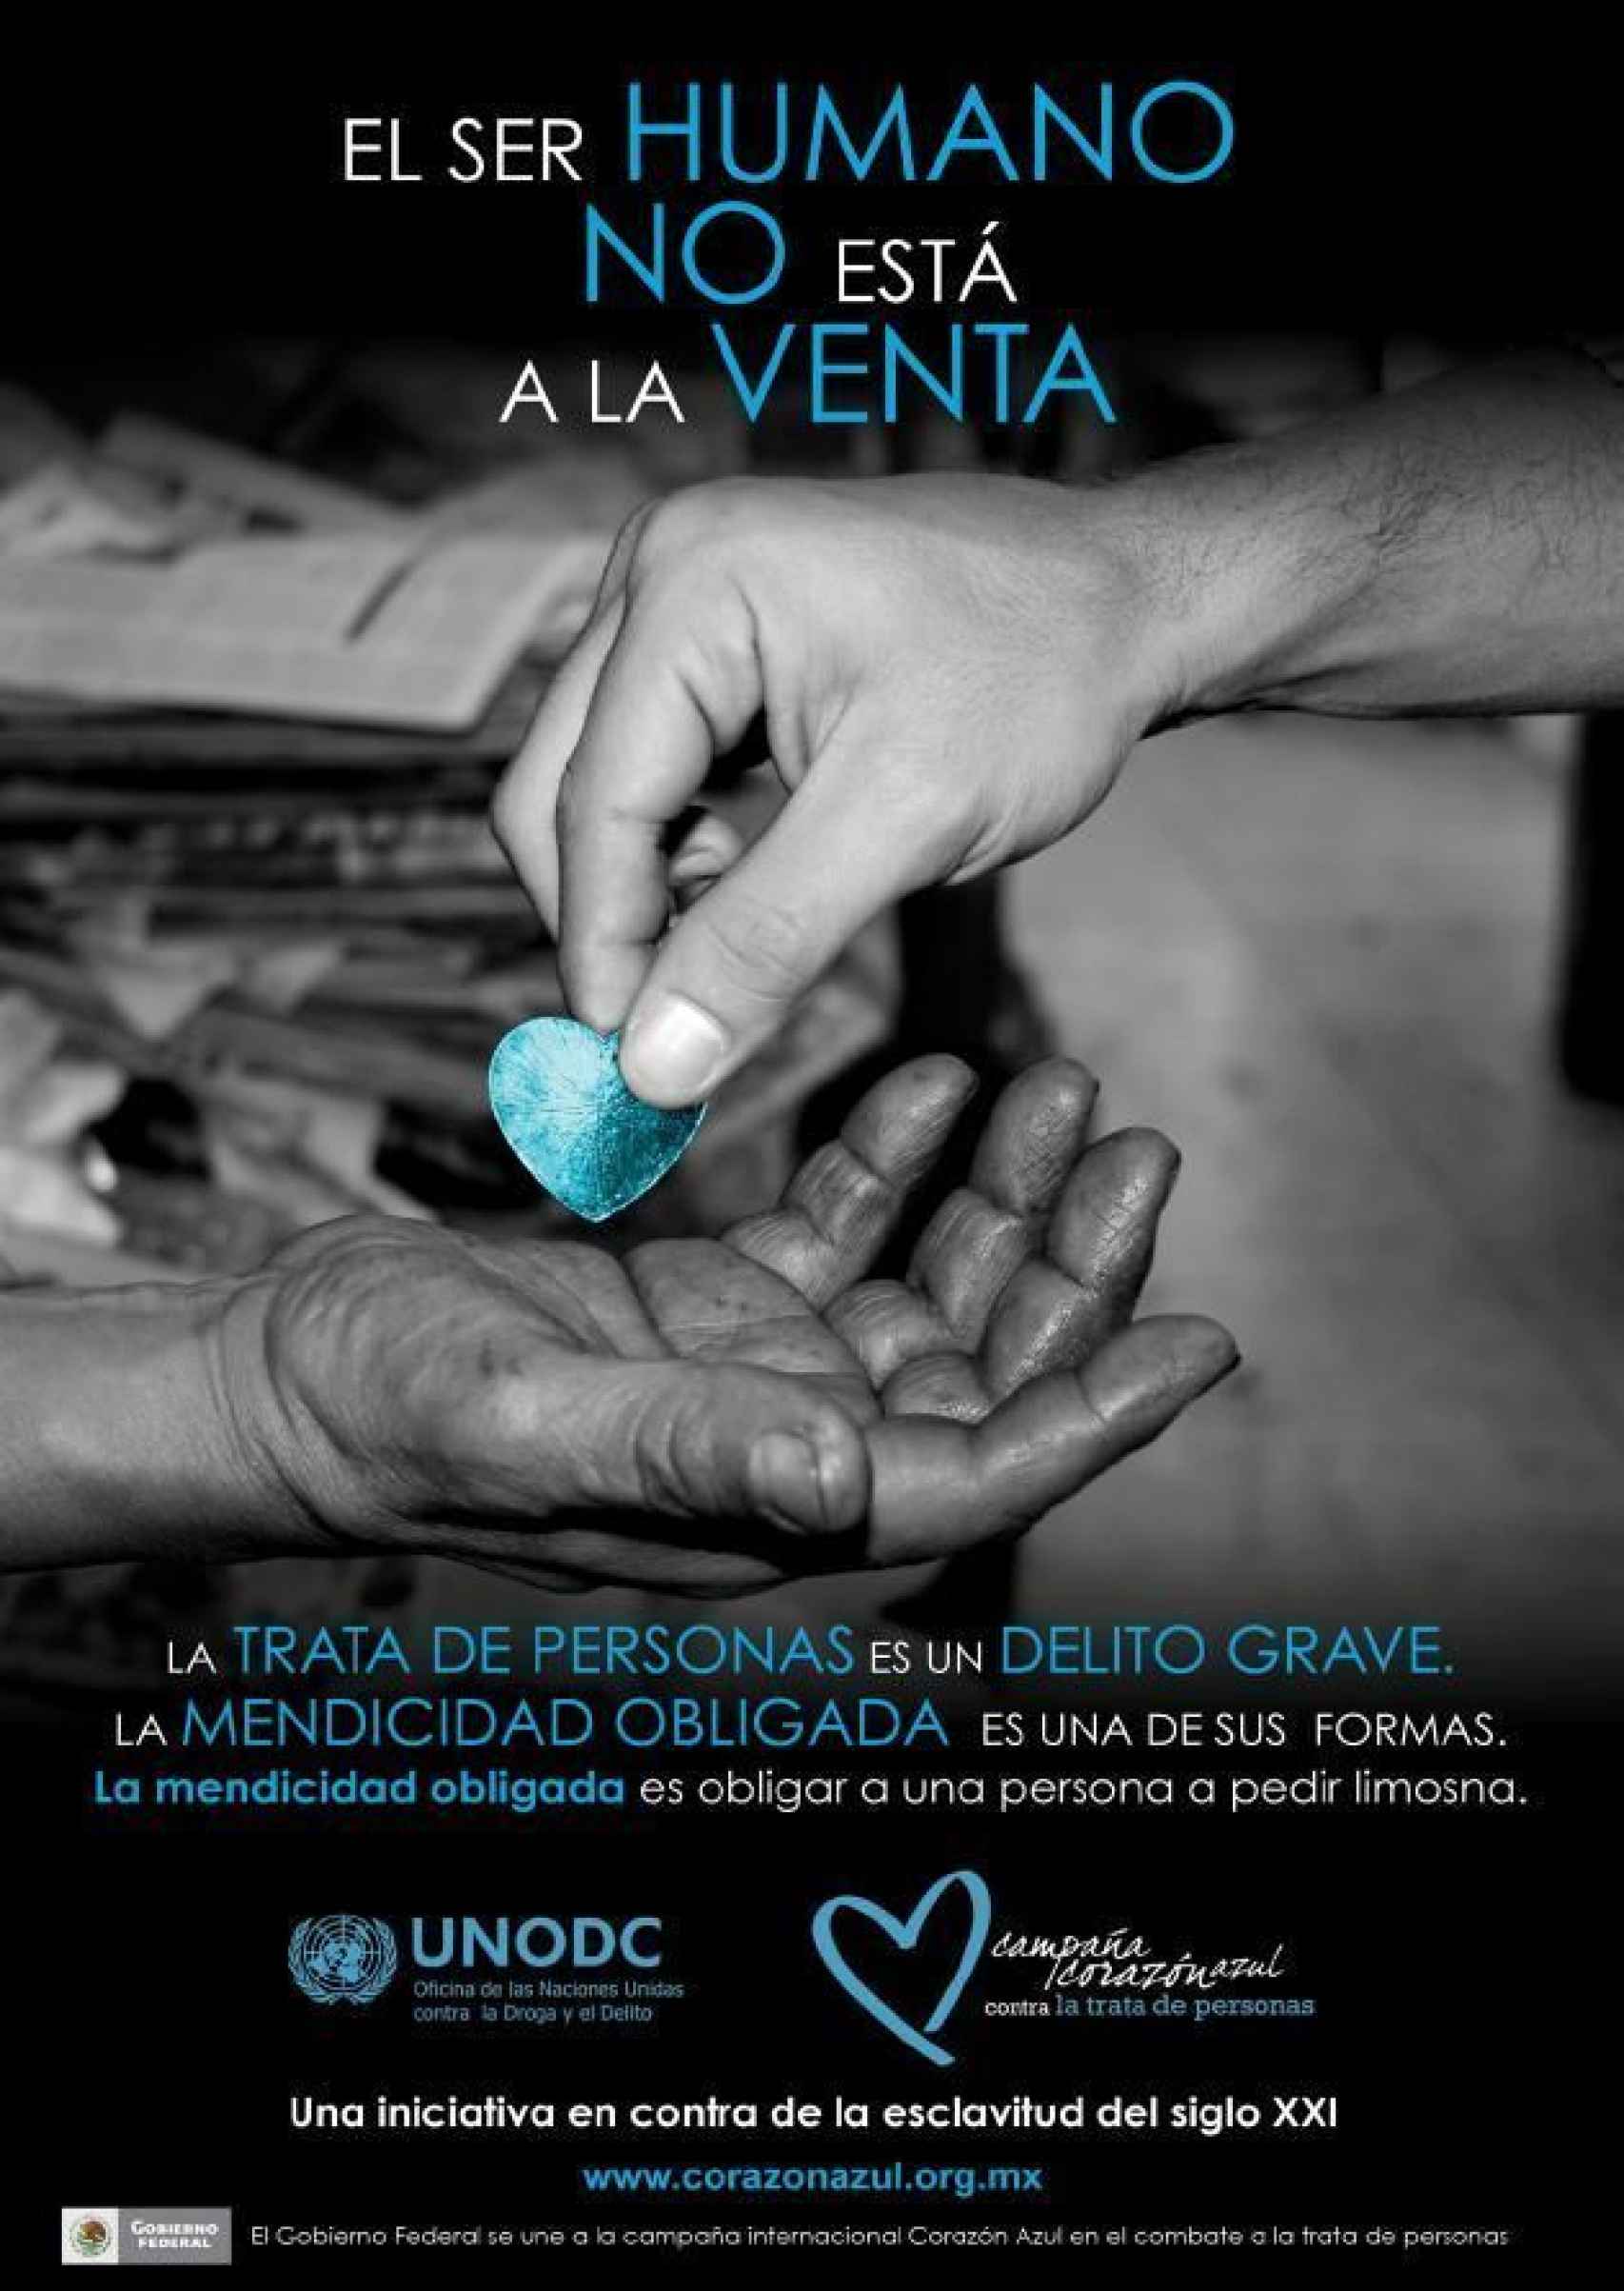 Uno de los carteles de la campaña 'Corazón Azul' contra la trata de personas.